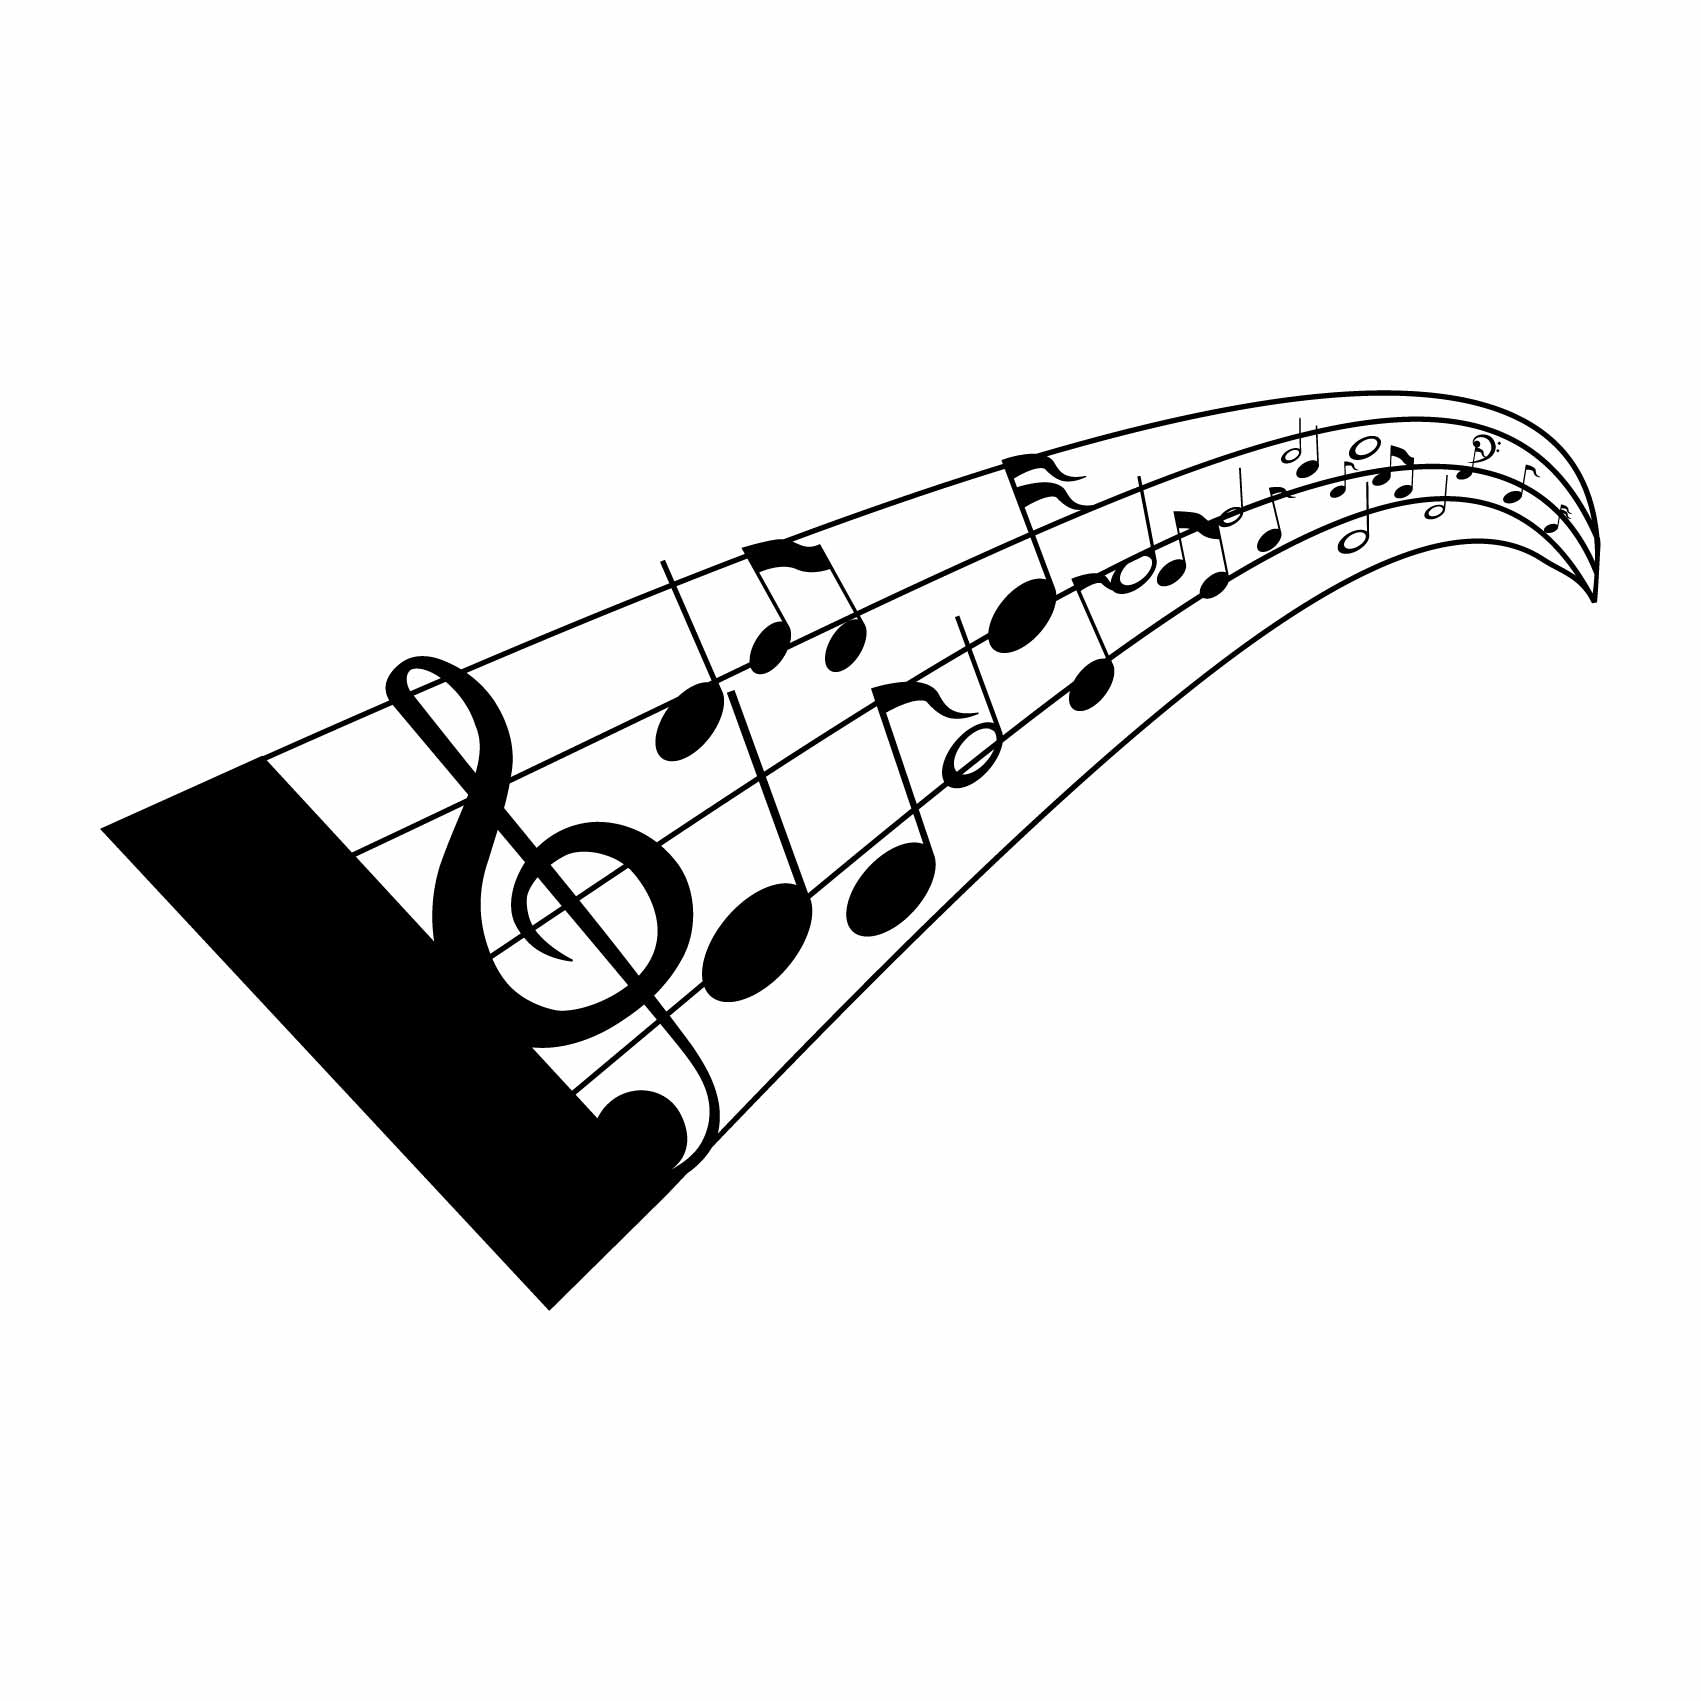 stickers-muraux-partition-solfège-ref68musique-stickers-muraux-musique-autocollant-deco-salon-chambre-music-sticker-mural-musique-(2)